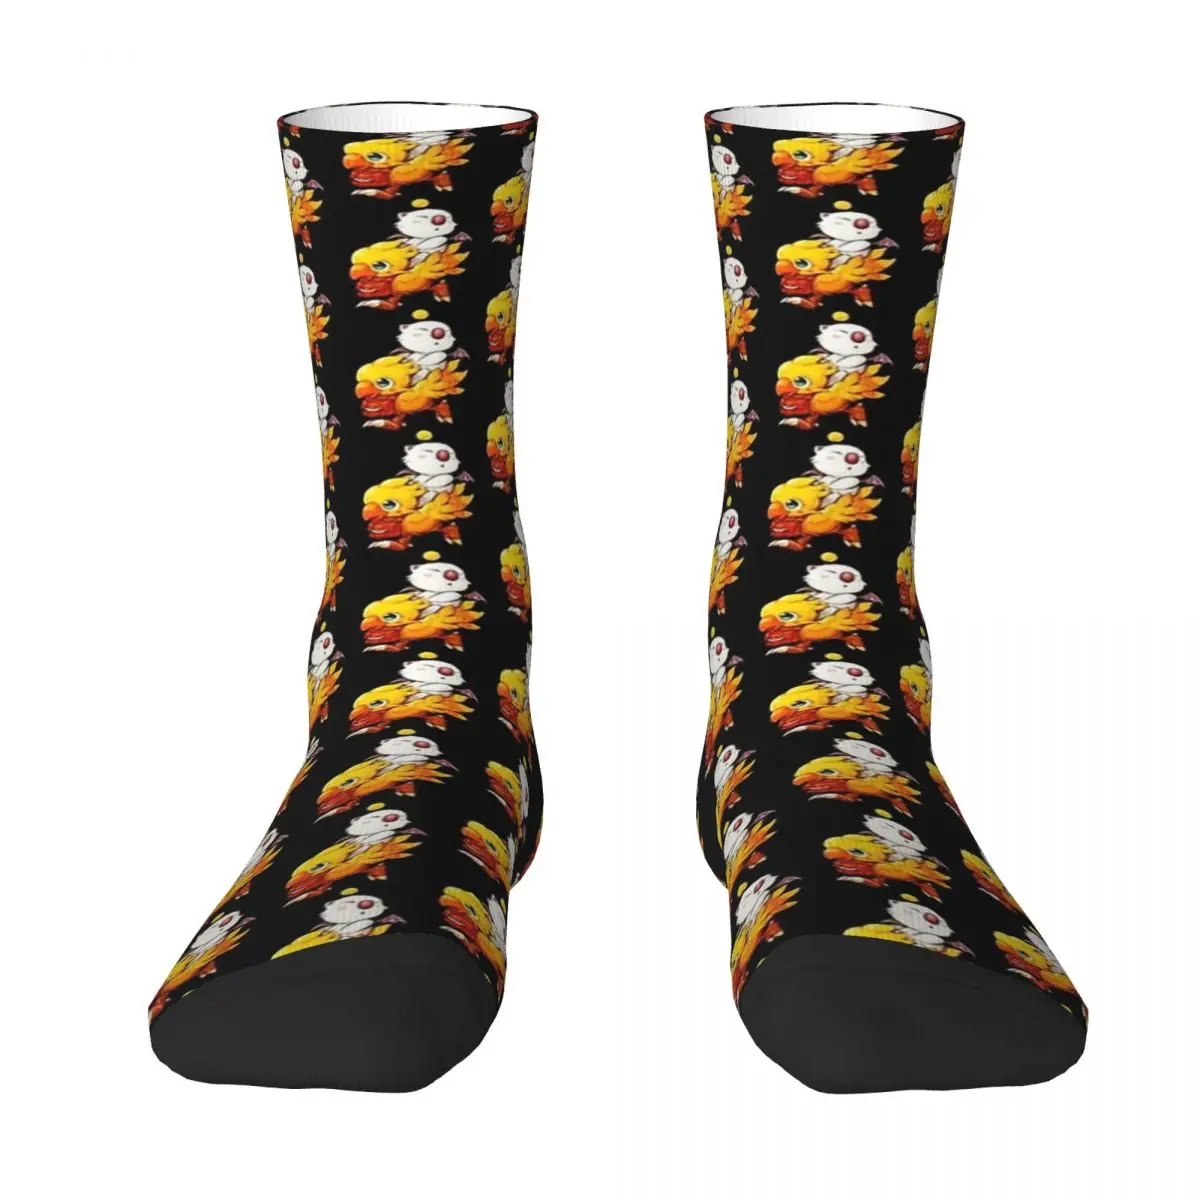 

Chocobo _ amp _ Moogle финальная фантазия унисекс Зимние носки уличные счастливые носки уличный стиль сумасшедшие носки